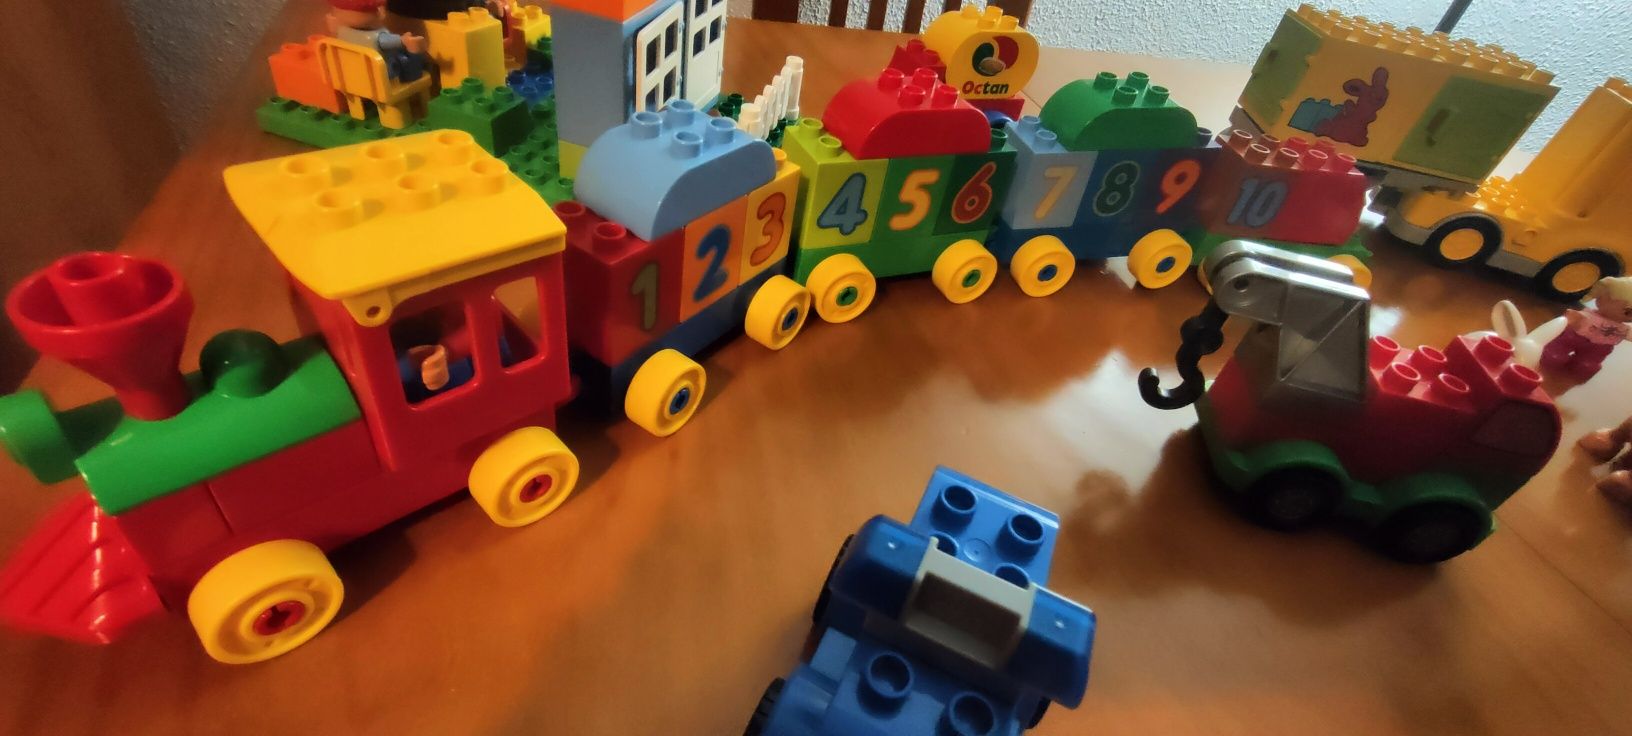 Lego Duplo - Peças variadas